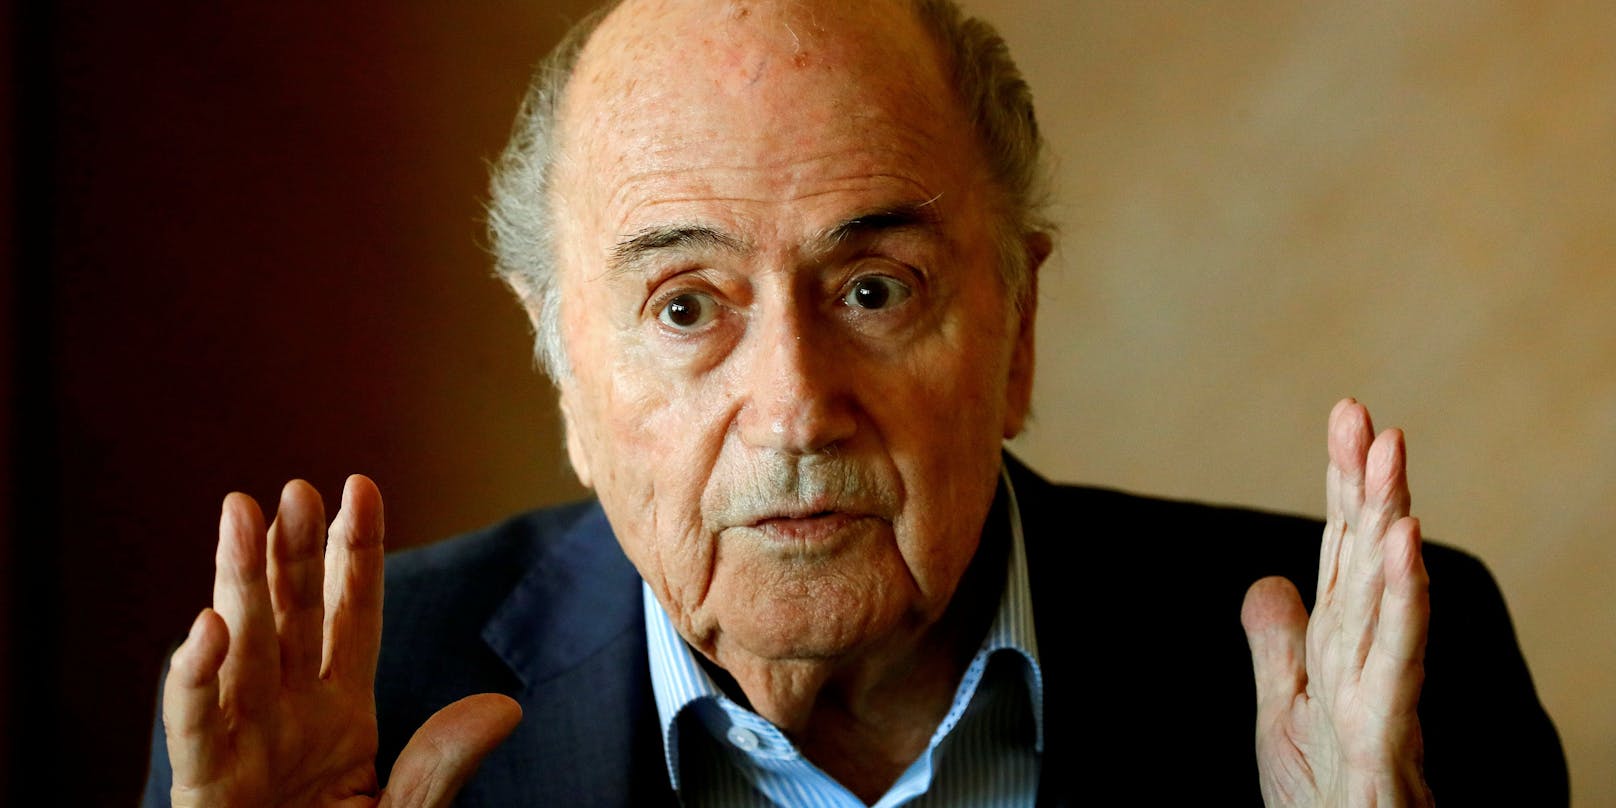 Ex-Fifa-Präsident Sepp Blatter kritisiert seinen Nachfolger Gianni Infantino. Seine Aussagen seien "weltfremd und ehrverletzend".